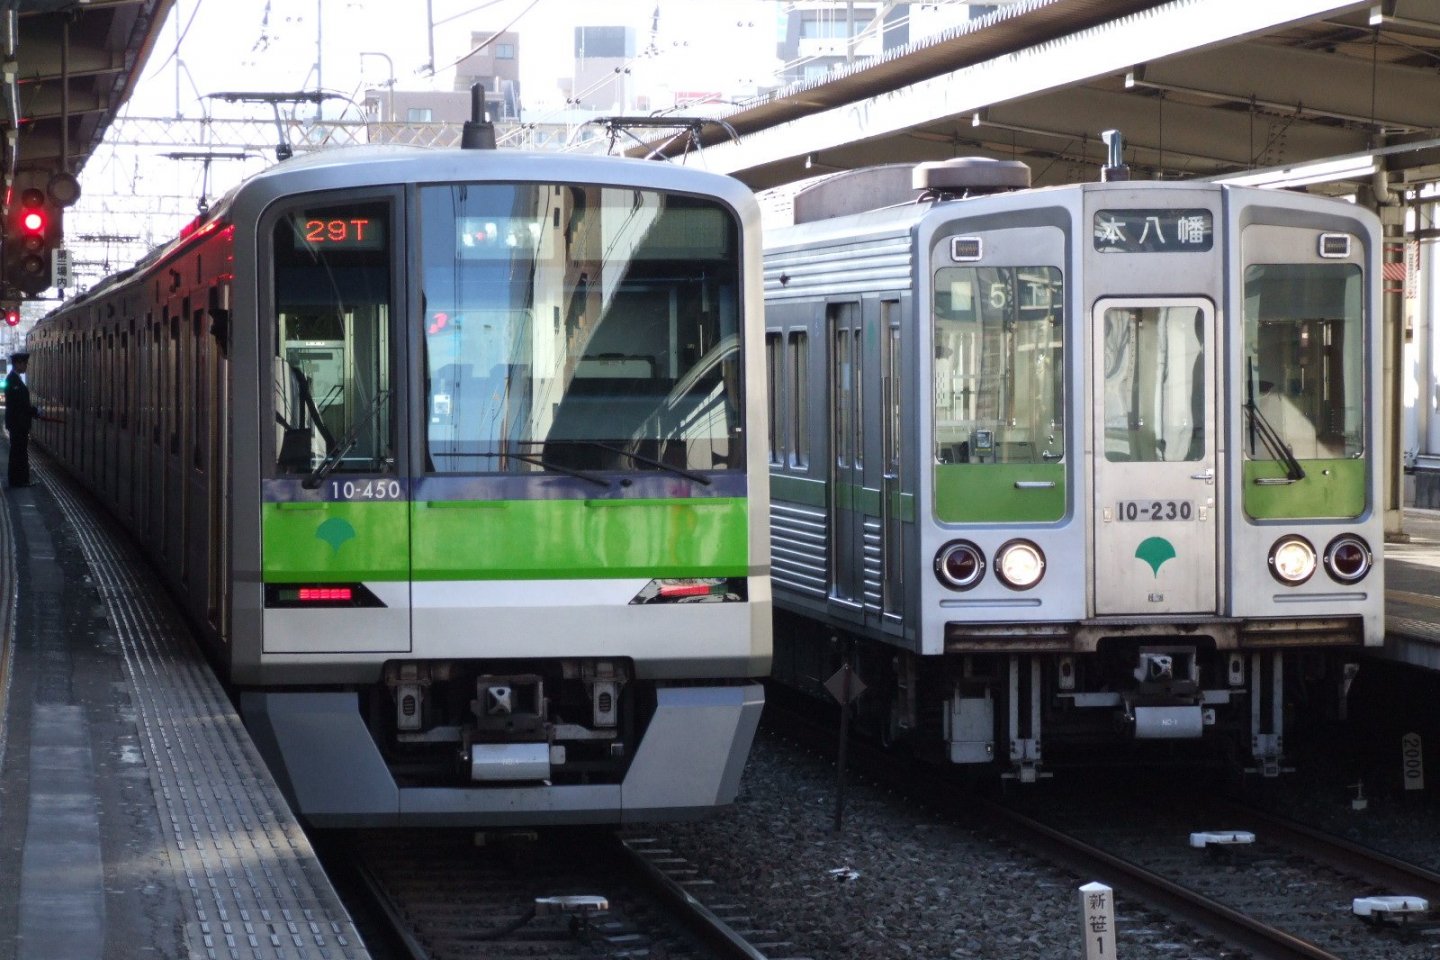 Toei Shinjuku Line trains